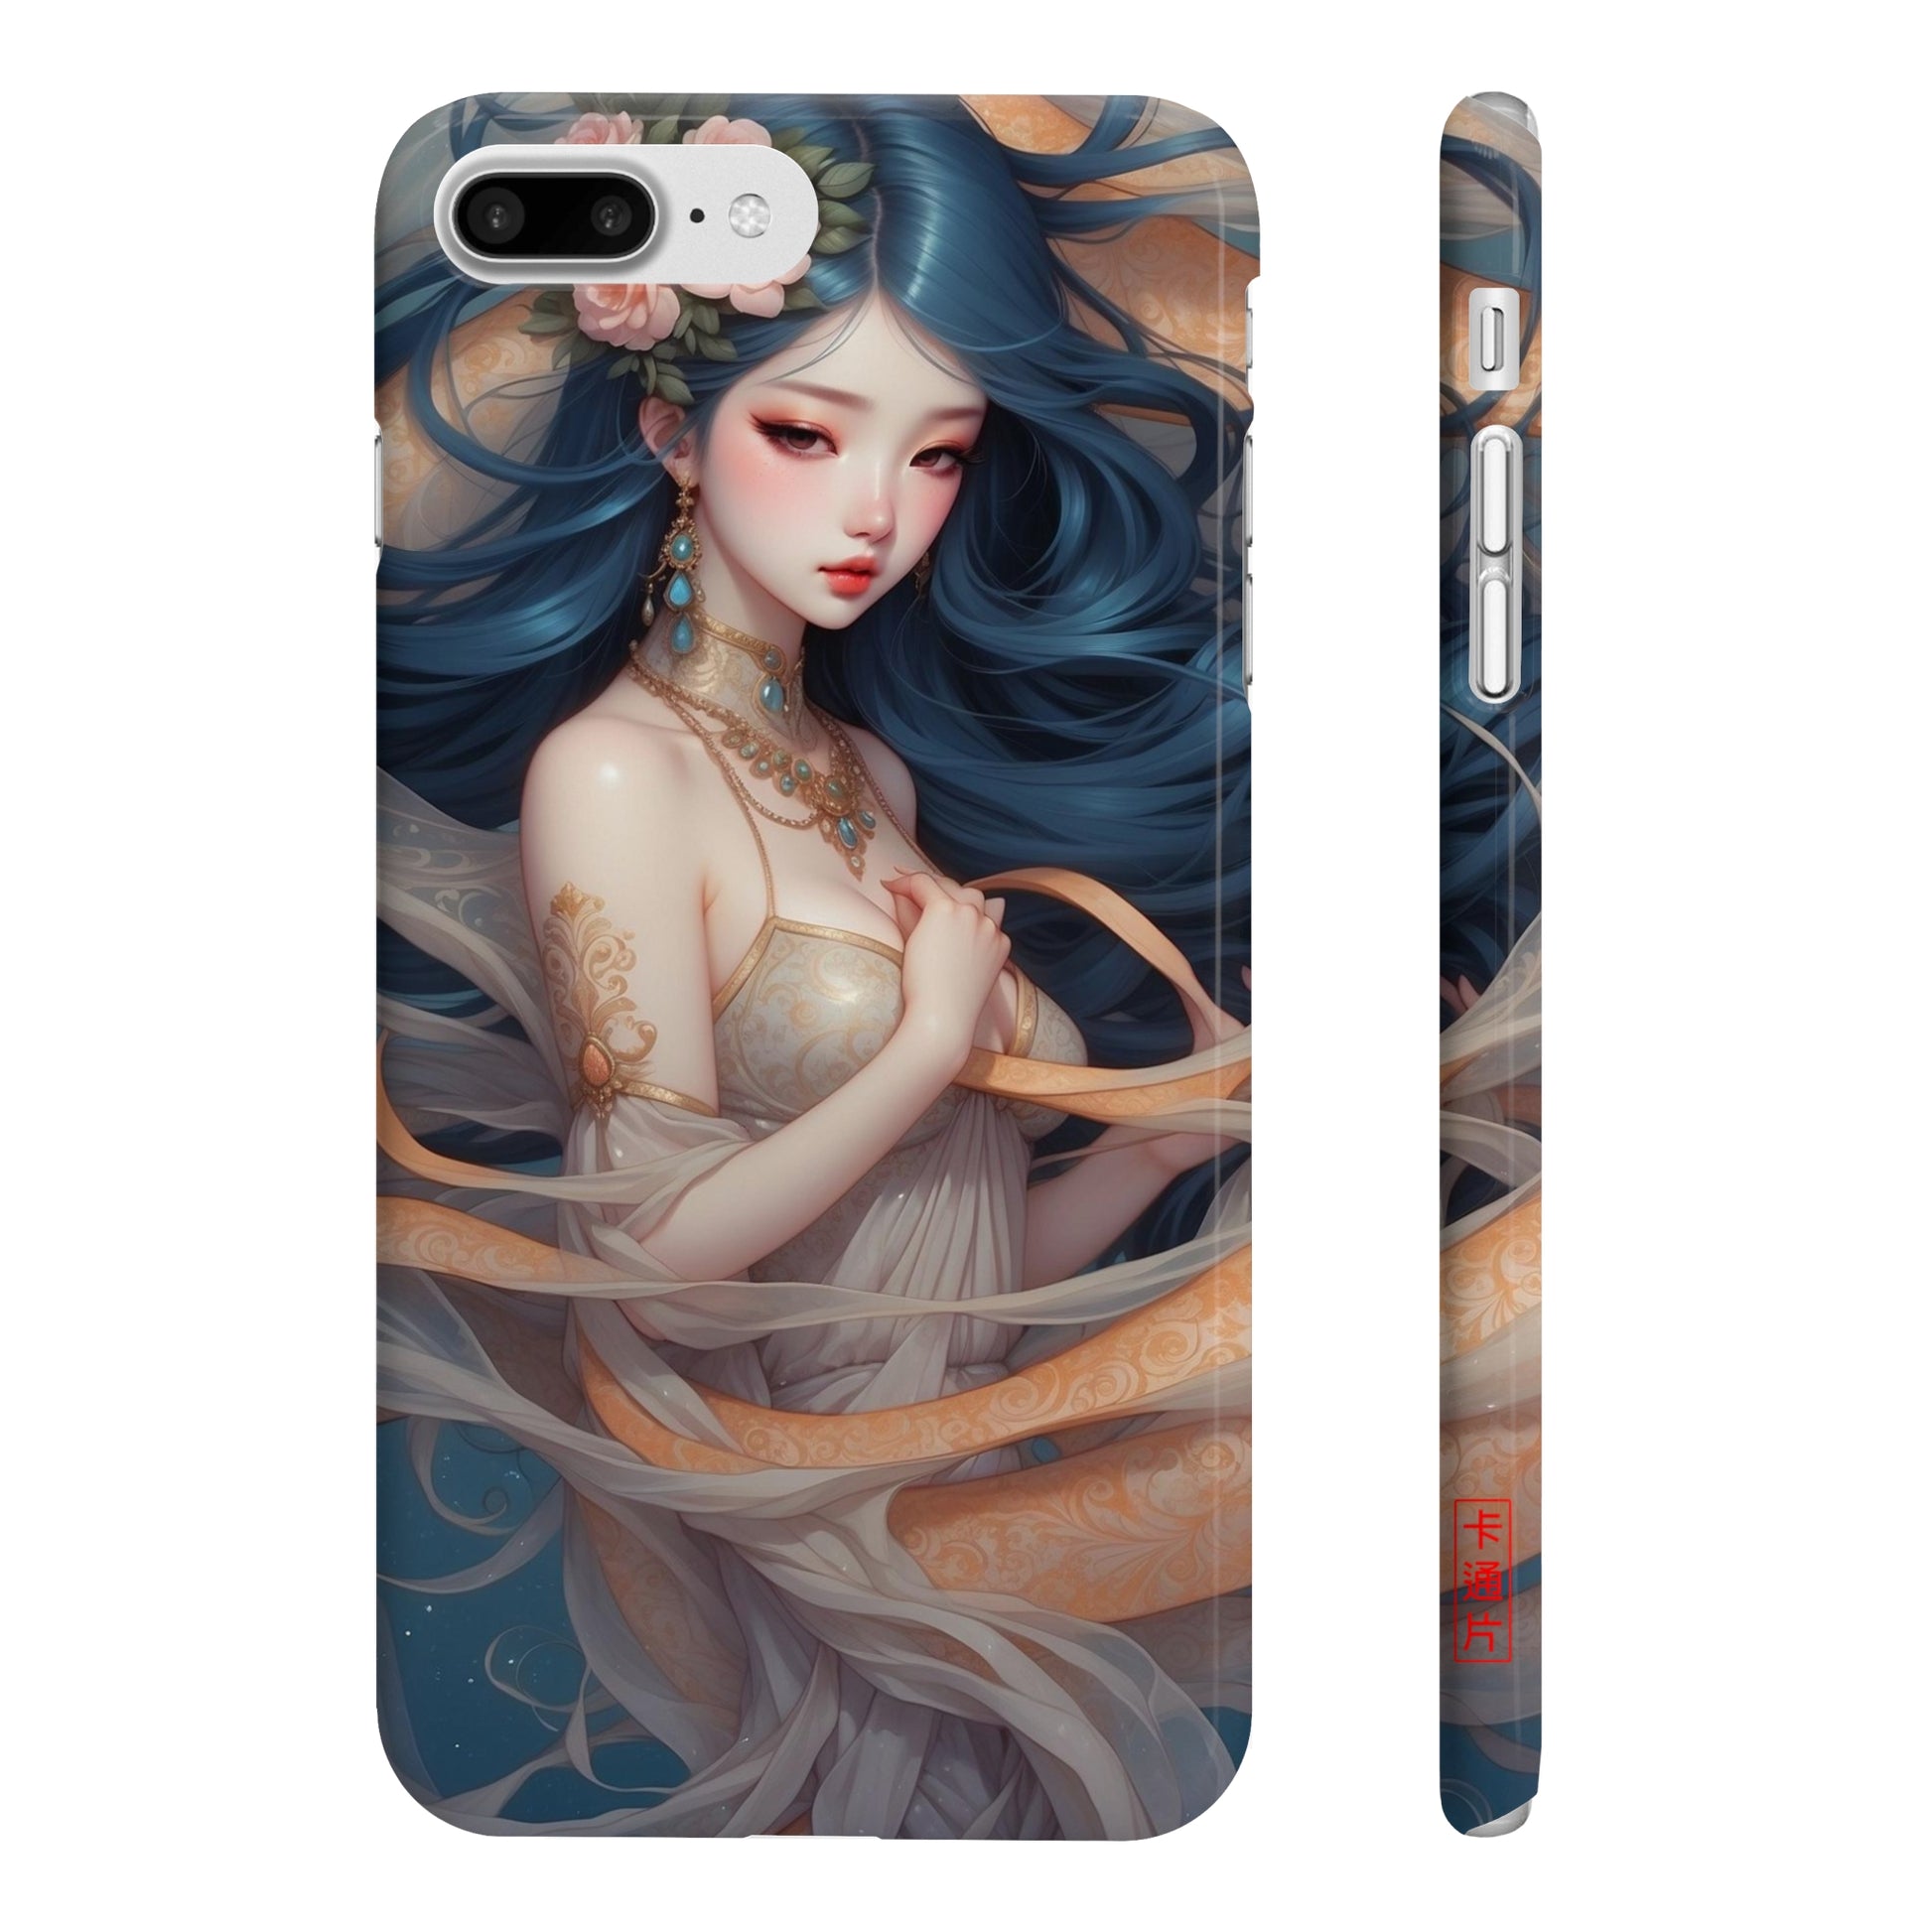 Kǎtōng Piàn - Mermaid Collection - 053 - Slim Phone Cases Printify